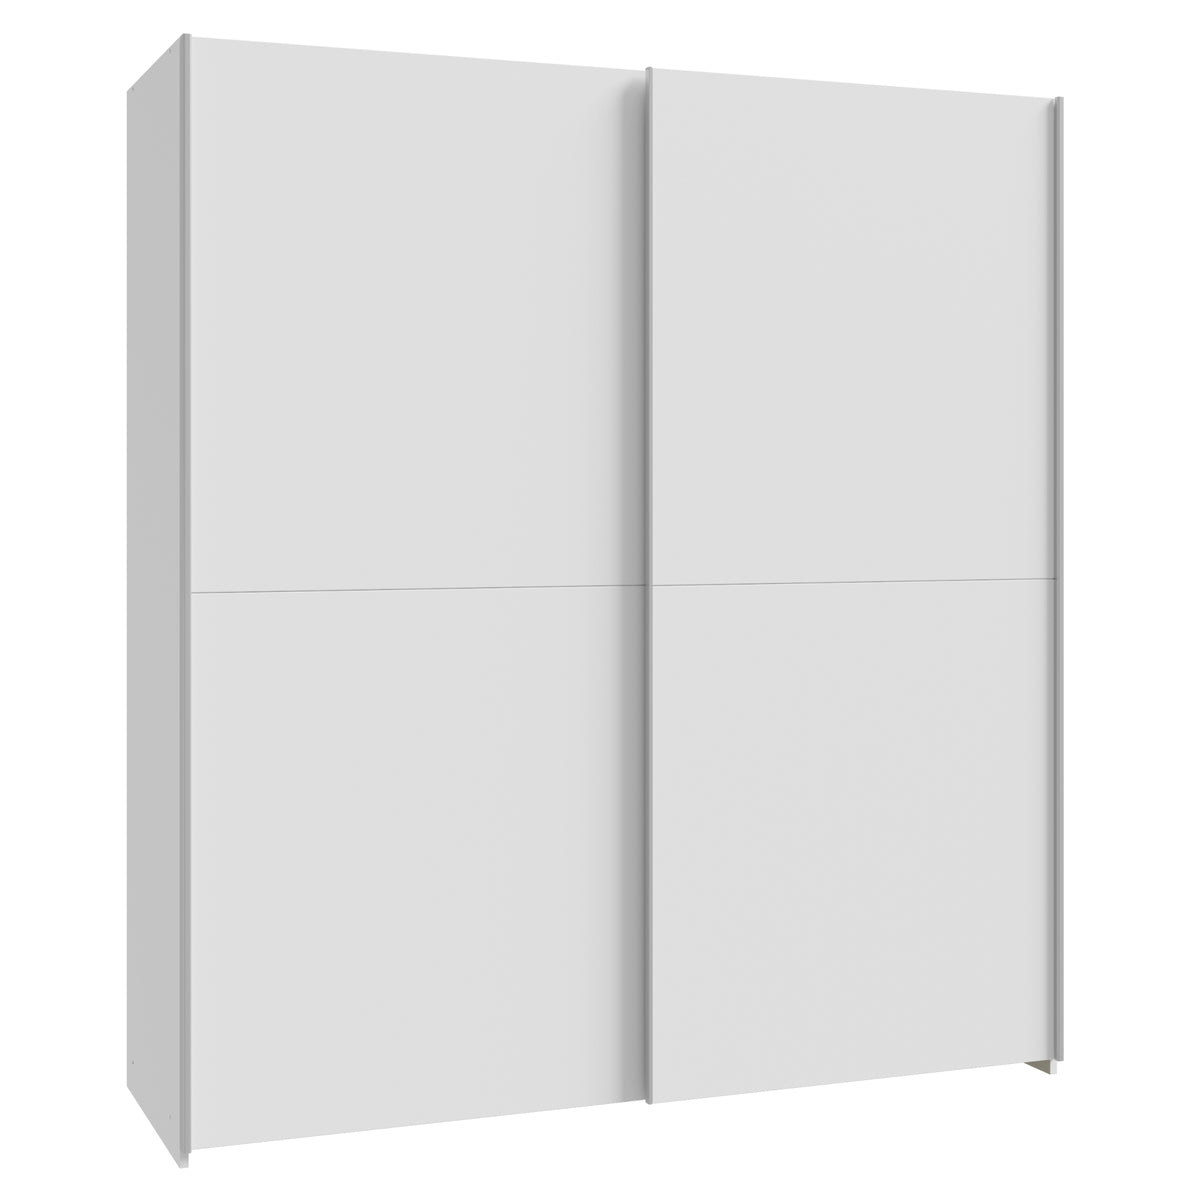 Šatní skříň Amy - 170,3x190,5x61,2 cm (bílá)